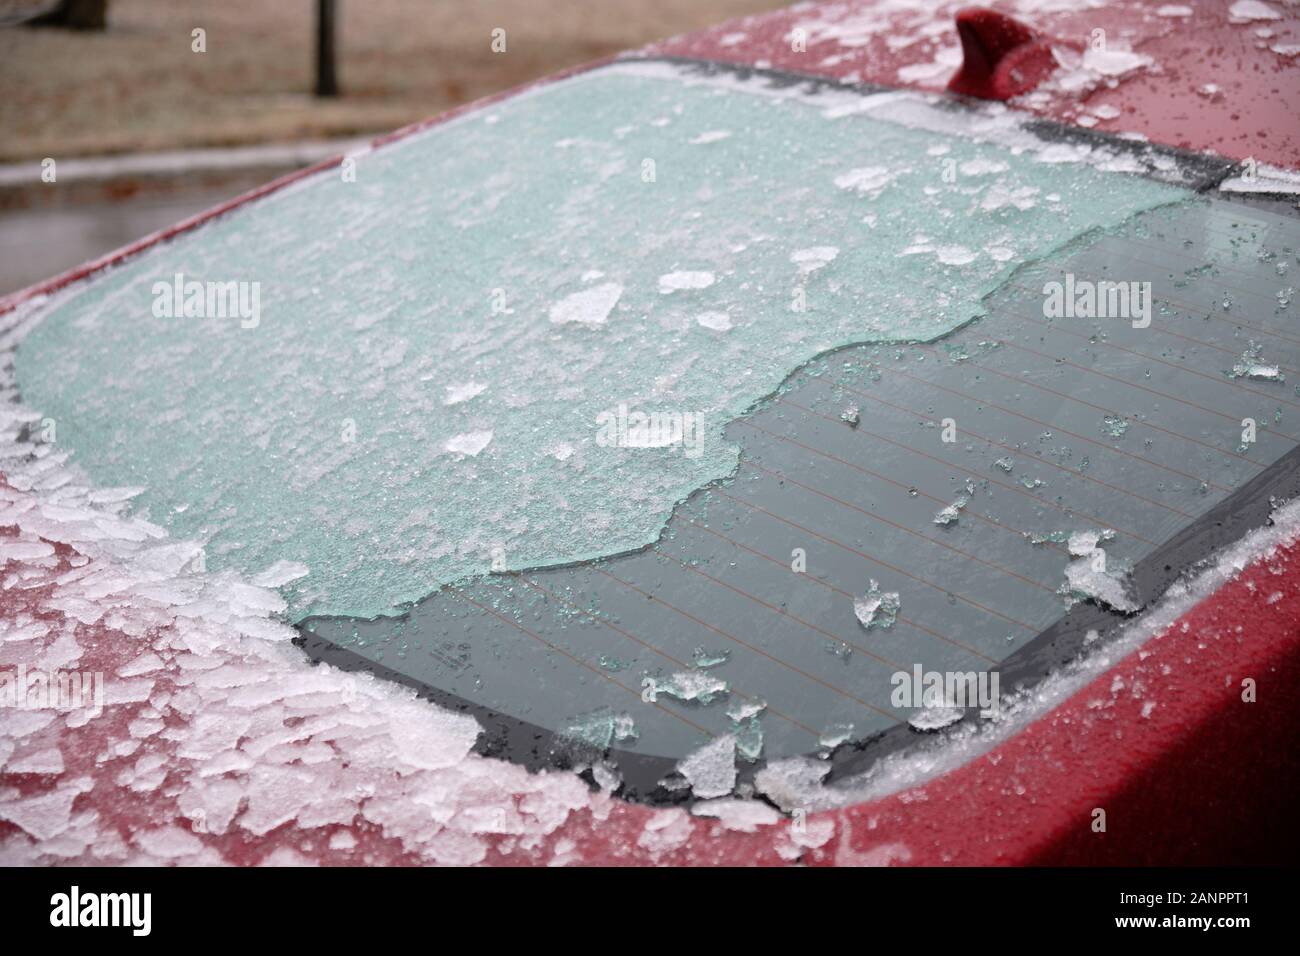 Pare-brise de voiture recouverte de glace chute de pluie verglaçante partiellement supprimé Banque D'Images